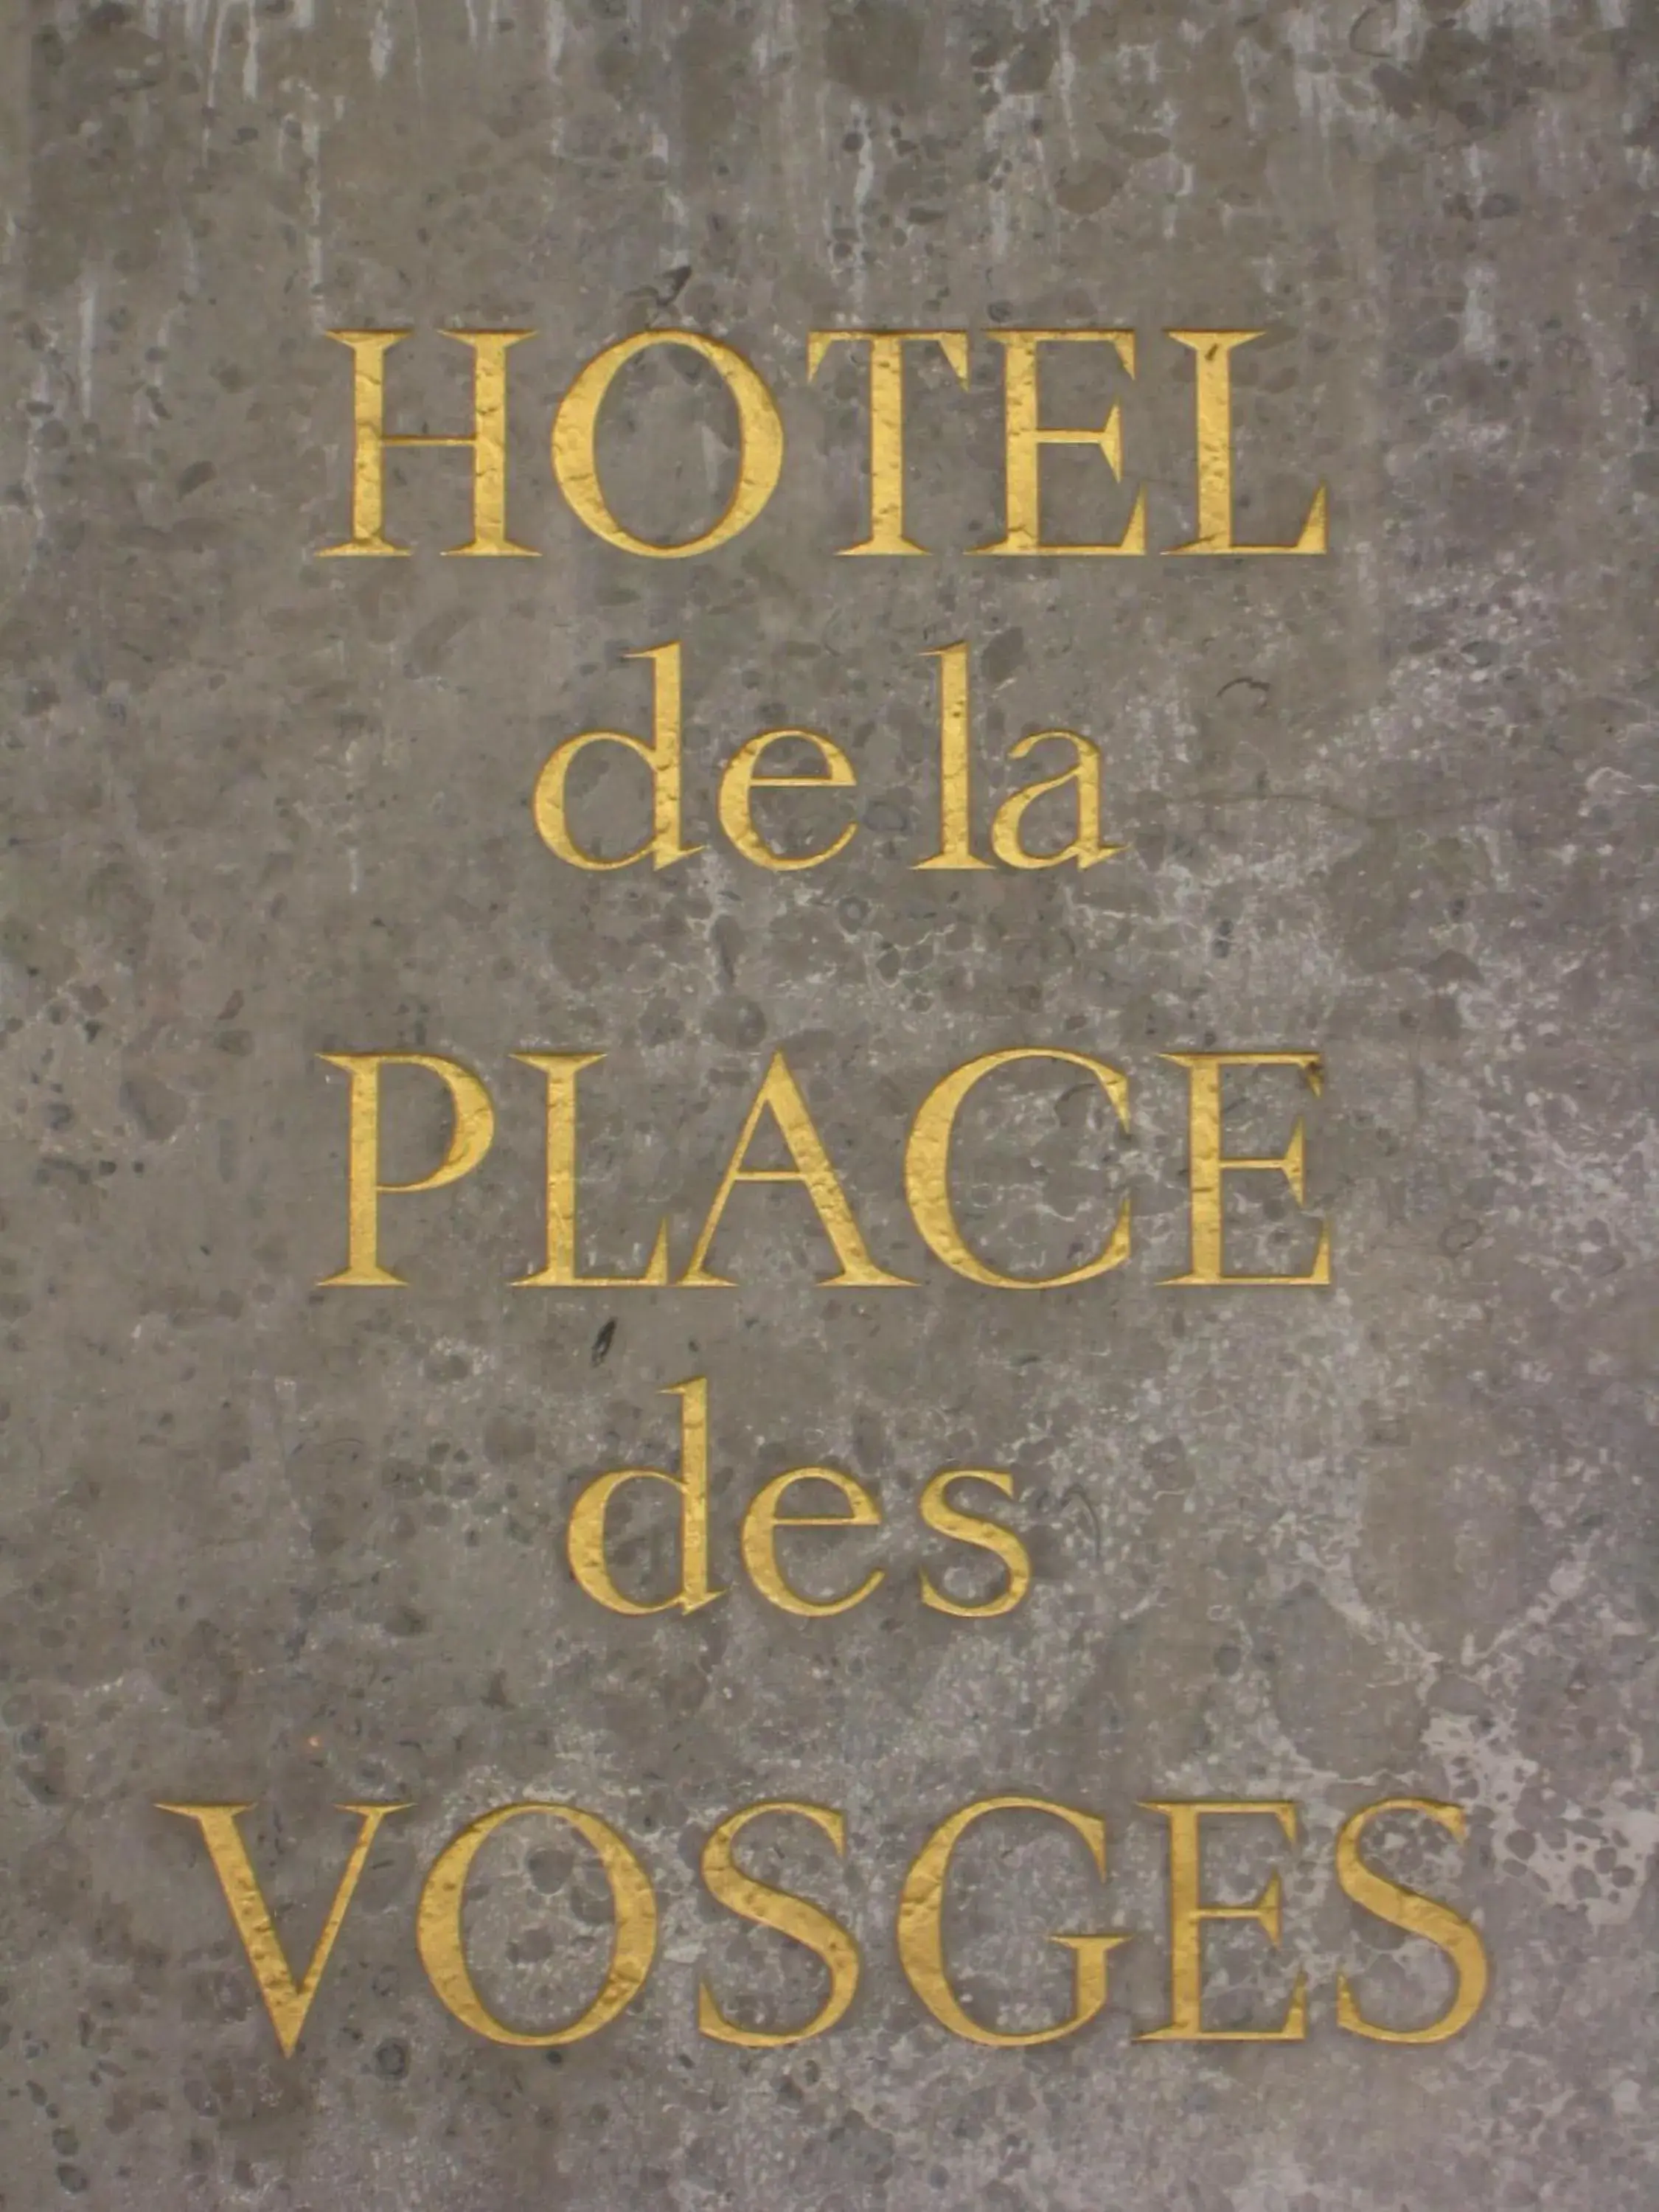 Property logo or sign in Boutique Hotel de la Place des Vosges